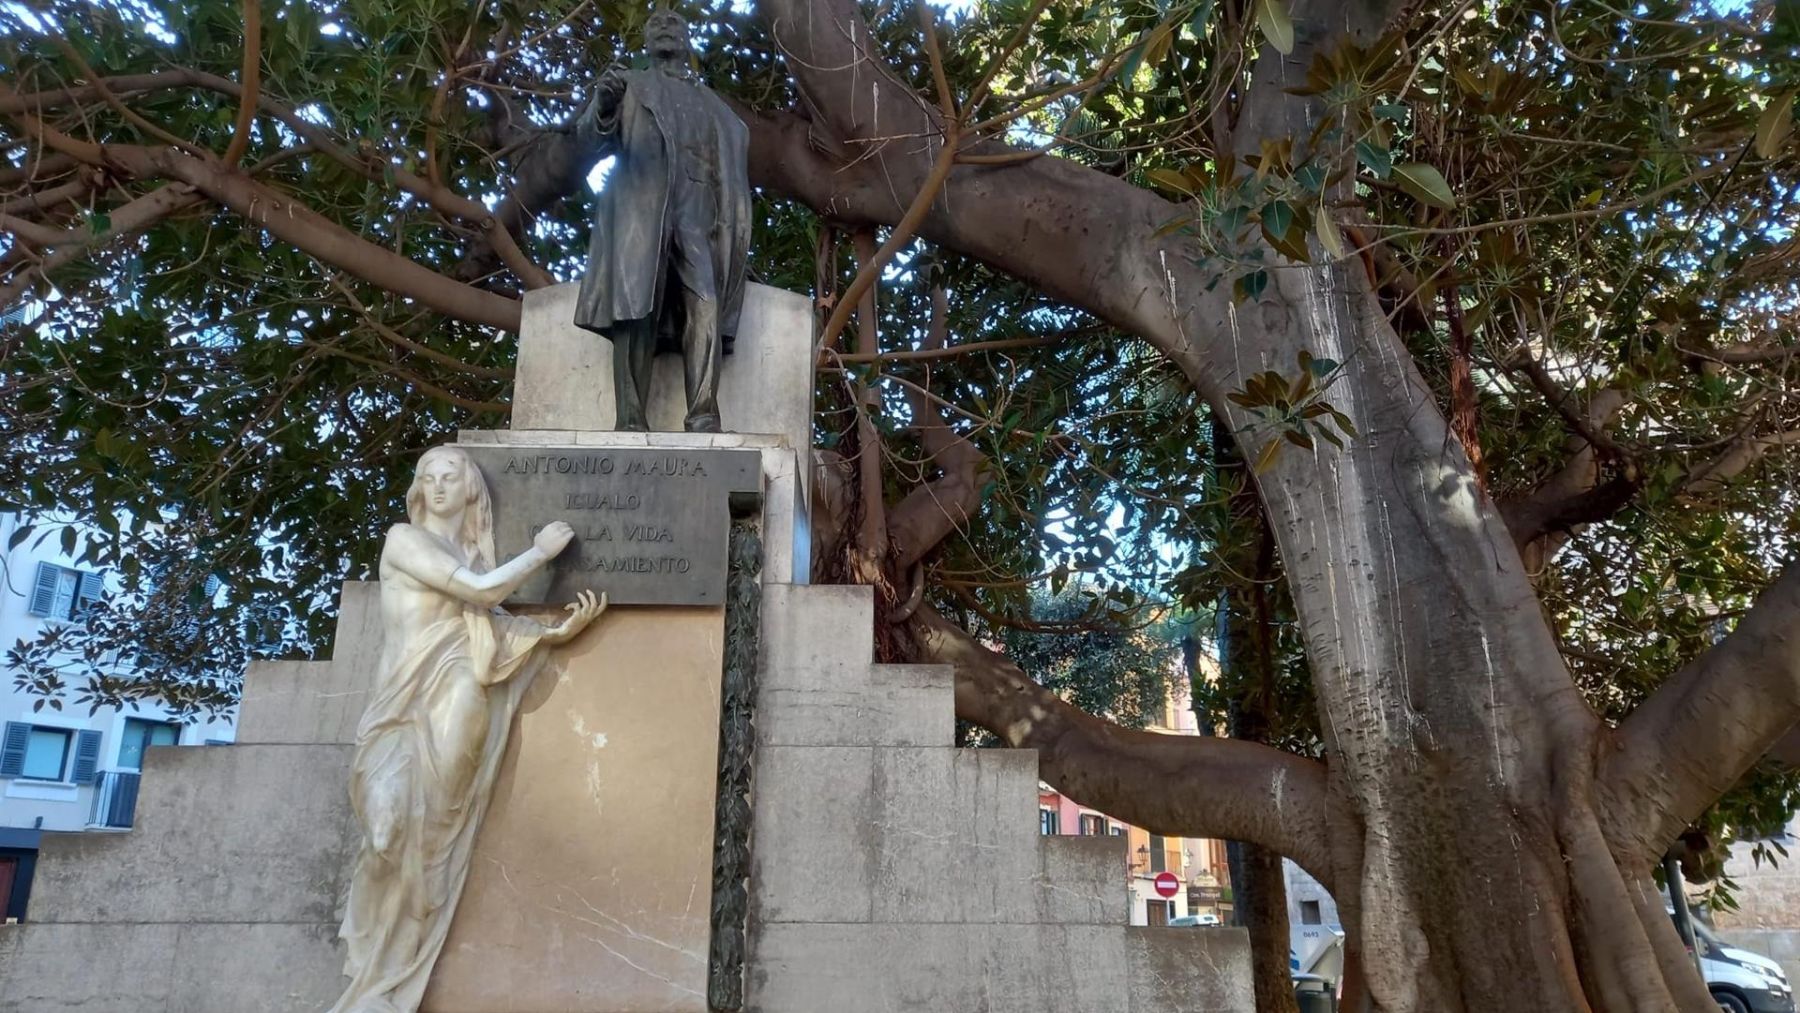 El ficus centenario y el monumento dedicado a Antonio Maura.